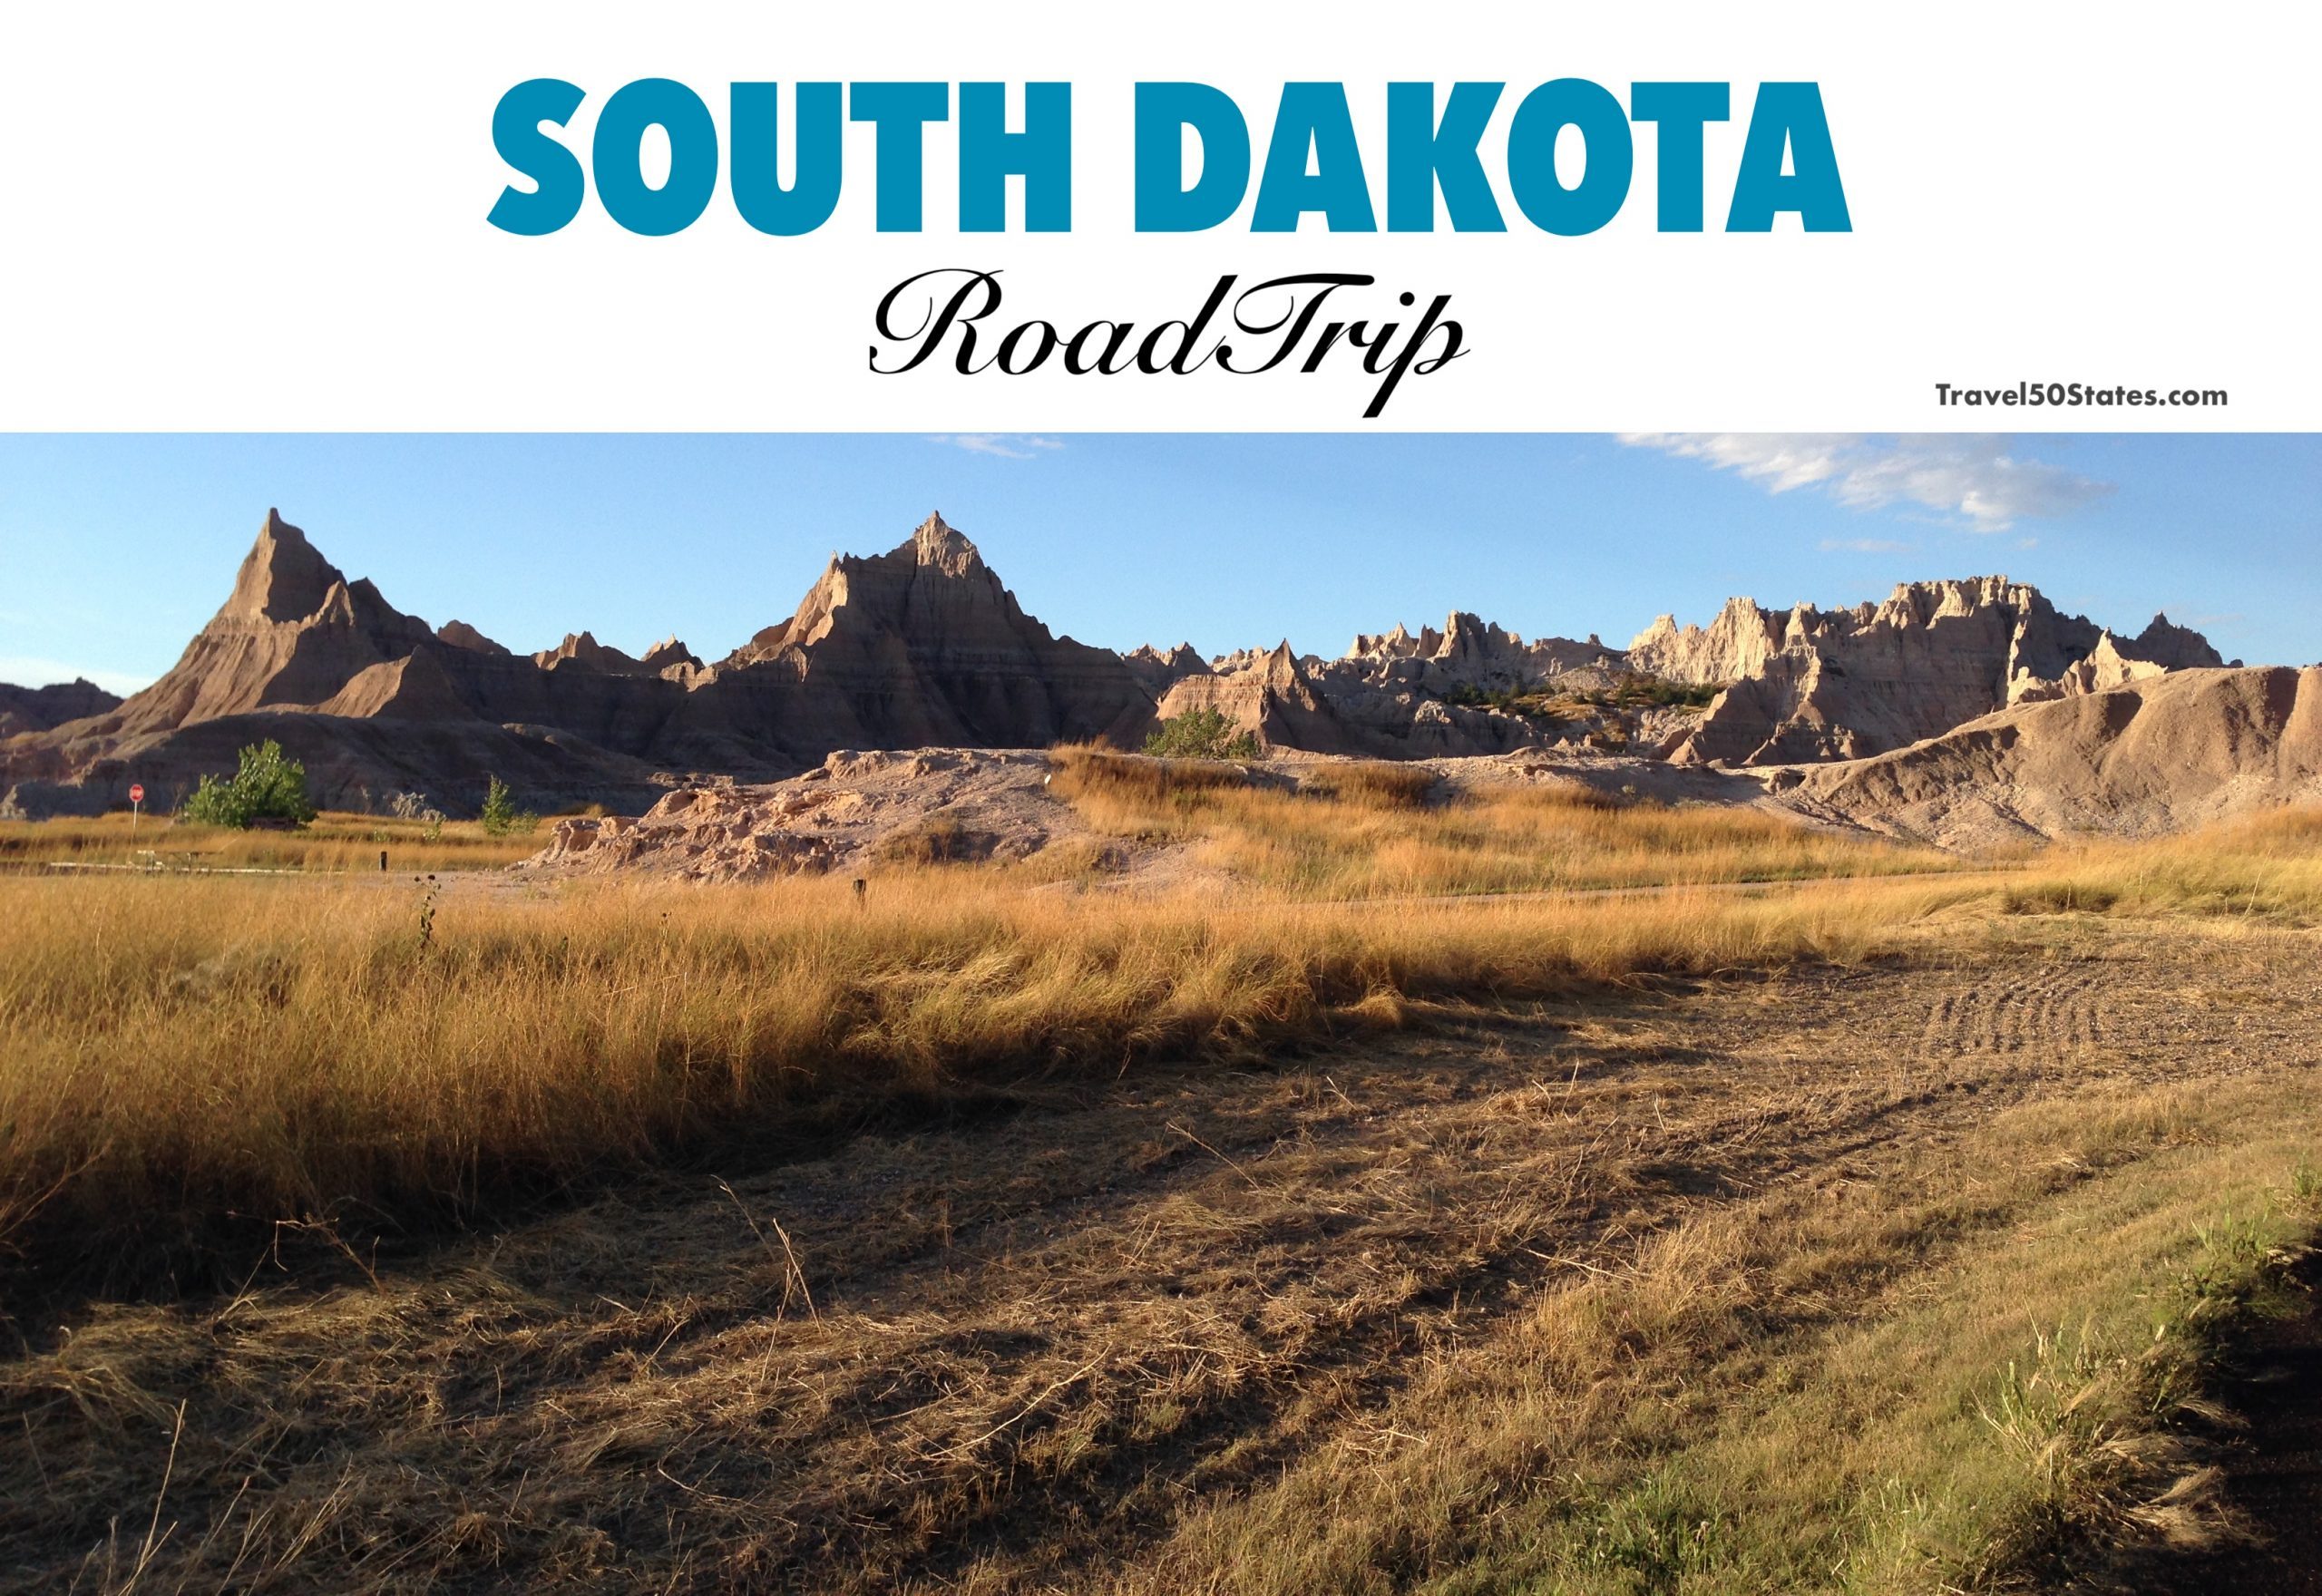 South Dakota ROAD TRIP